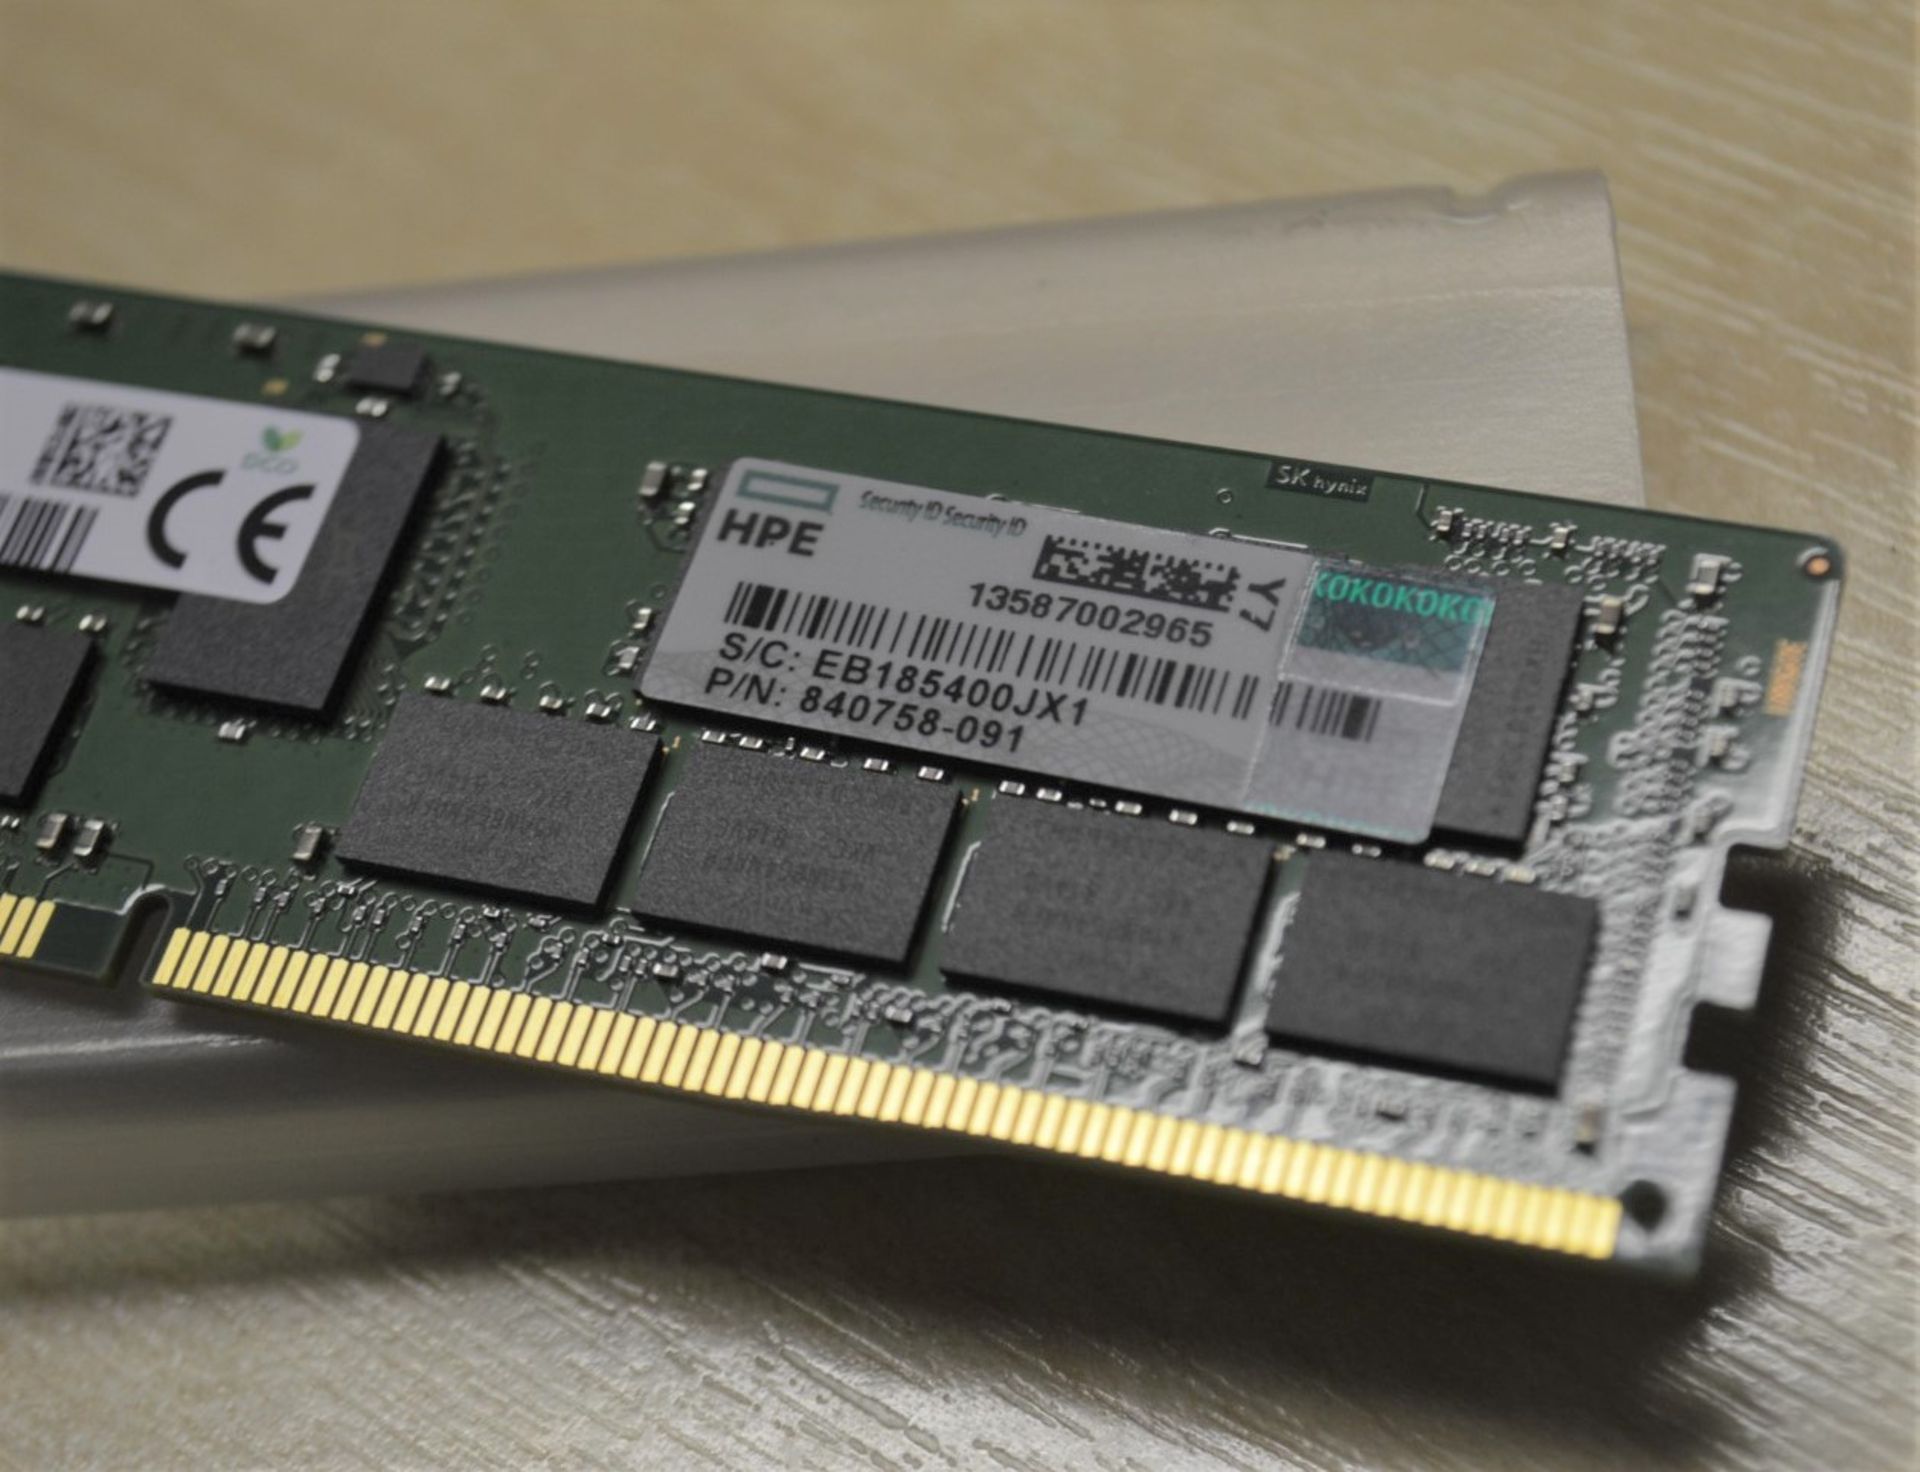 1 x SK Hynix 32gb DDR4 2666Mhz 2RX4 ECC Reg Memory Module - HMA84GR7AFR4N-VK - CL678 - Location: - Image 2 of 3